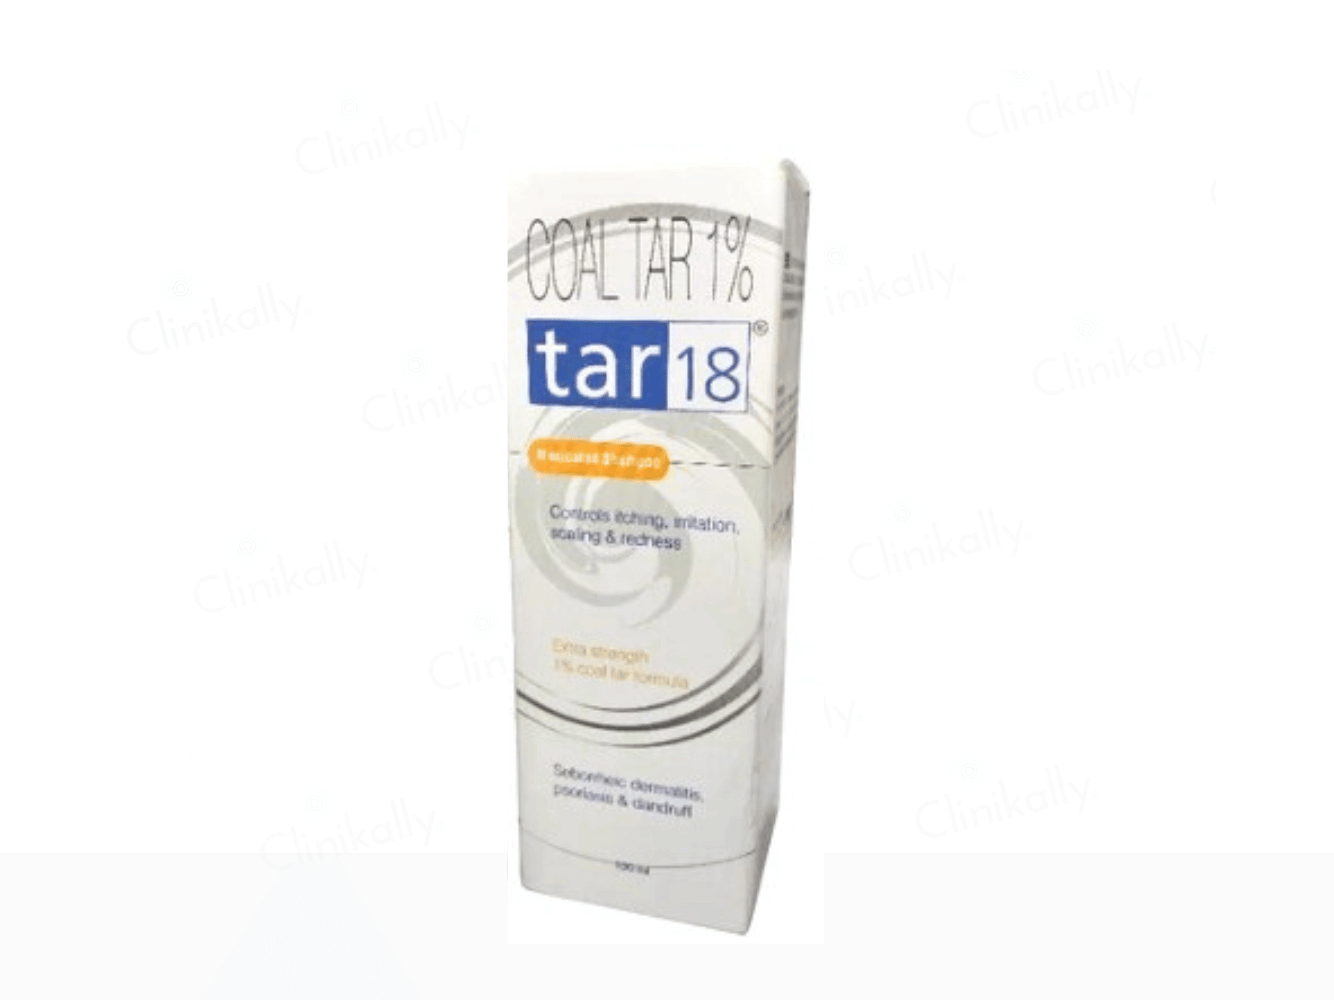 Tar 18 Medicated Shampoo with 1% Coal Tar - Clinikally